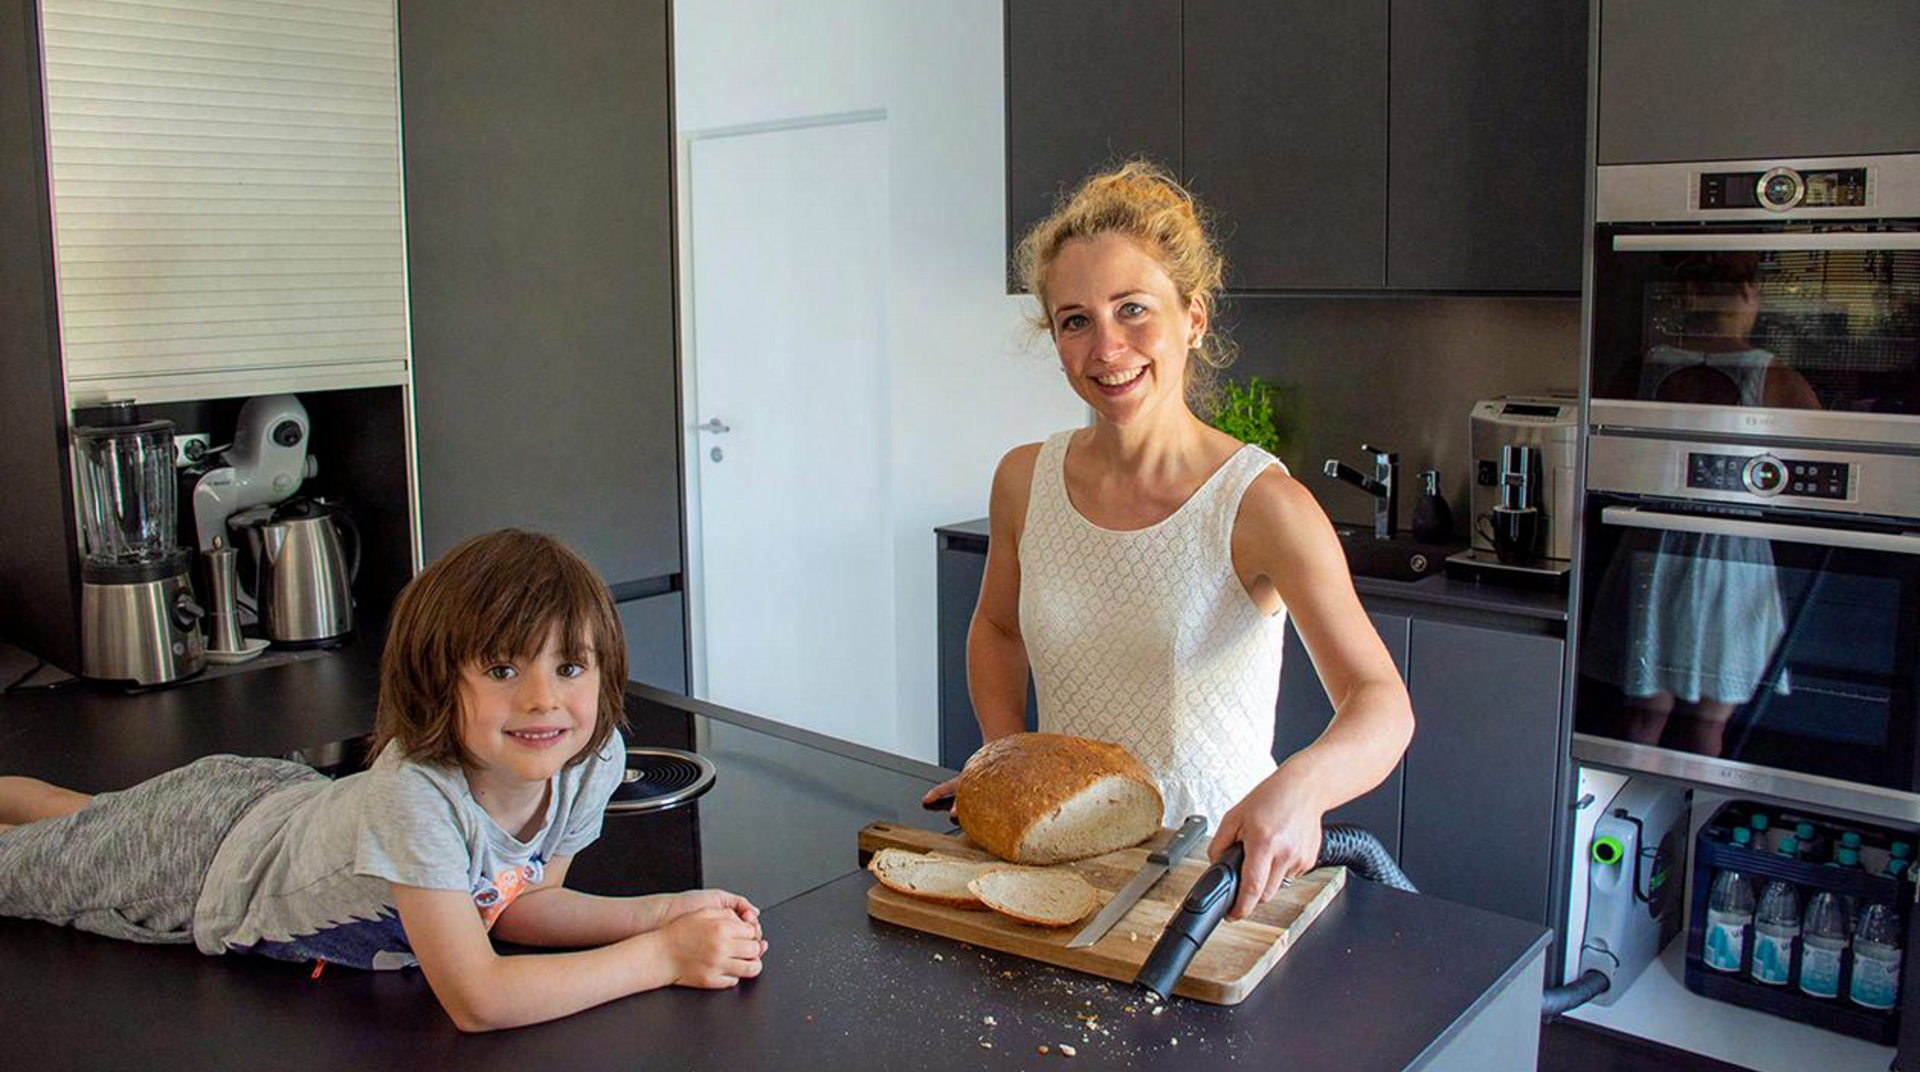 Mutter und Kind in Küche saugen Brotkrümel ein